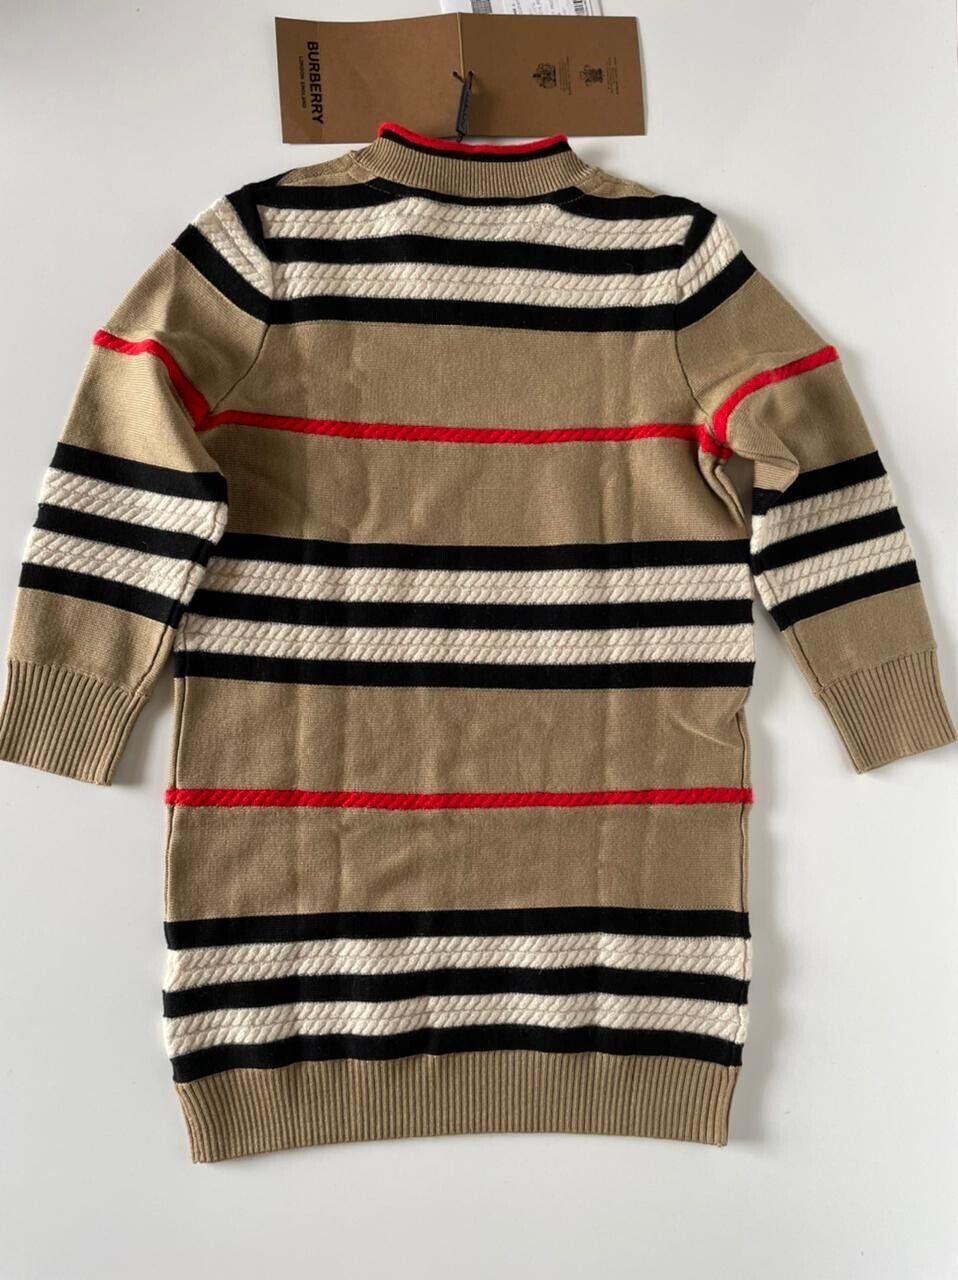 Neu mit Etikett: 450 $ Burberry Leeta Woll-Kaschmir-Beigekleid für kleine Mädchen und Mädchen 6